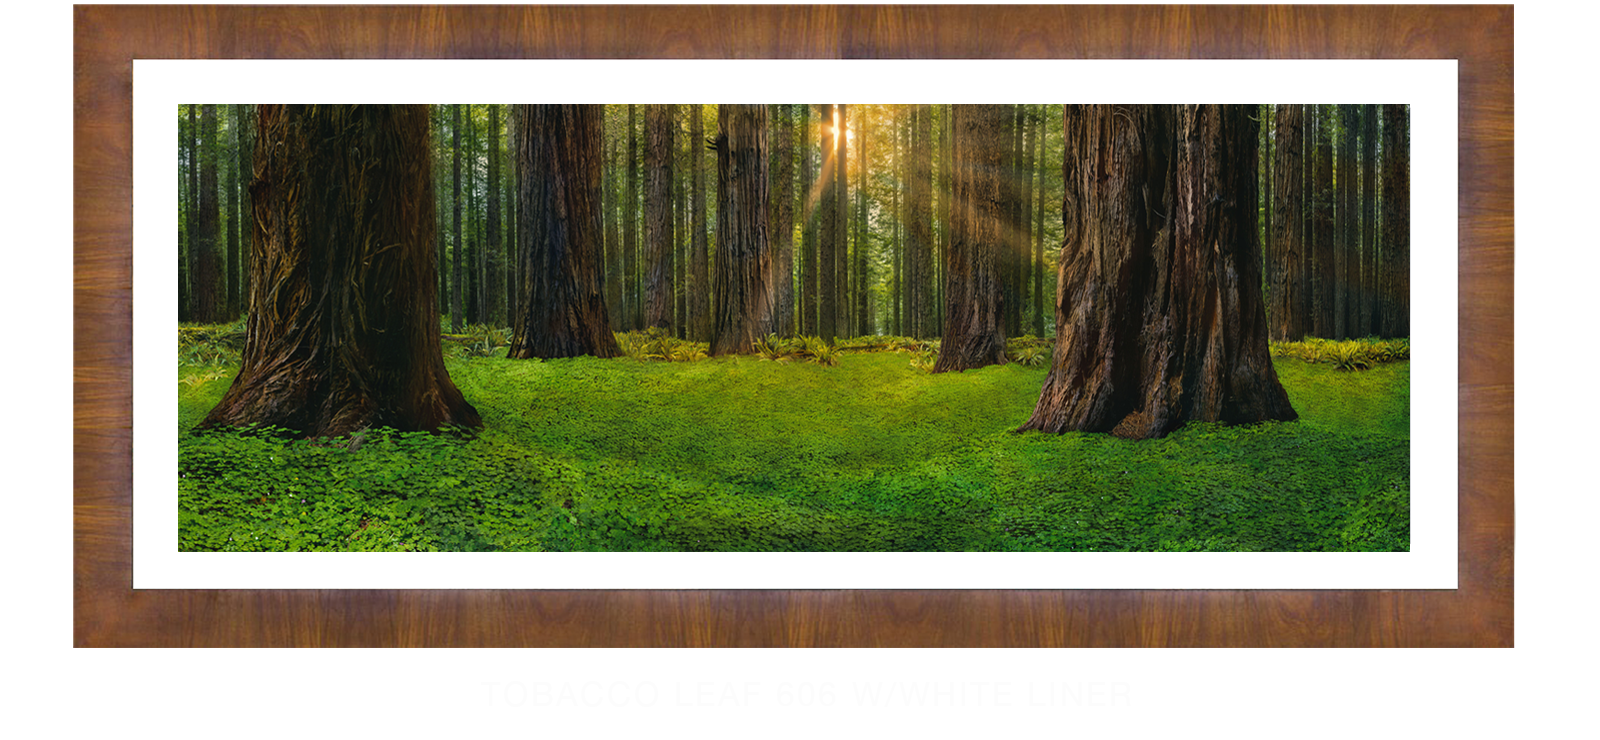 24SANCTUS_TITANICUS Tobacco Leaf 606 w_Wht Liner T